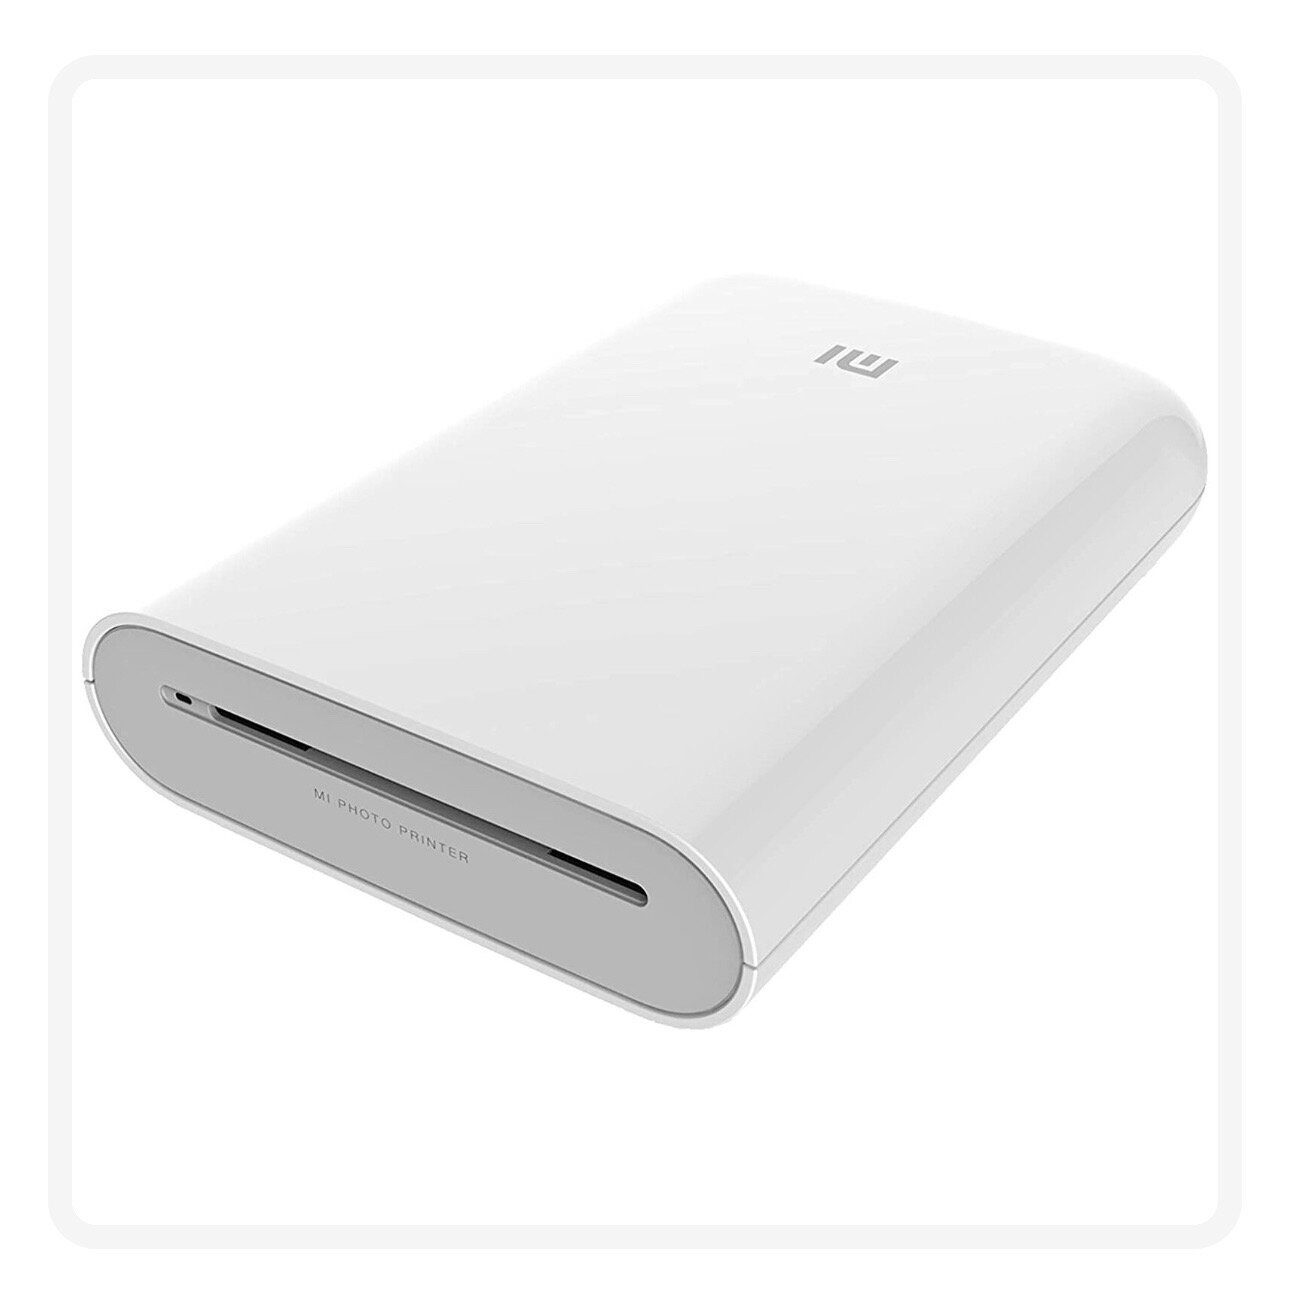 Портативный принтер Xiaomi Mijia AR ZINK XMKDDYJHT01 + 100 листов бумаги (комплект)